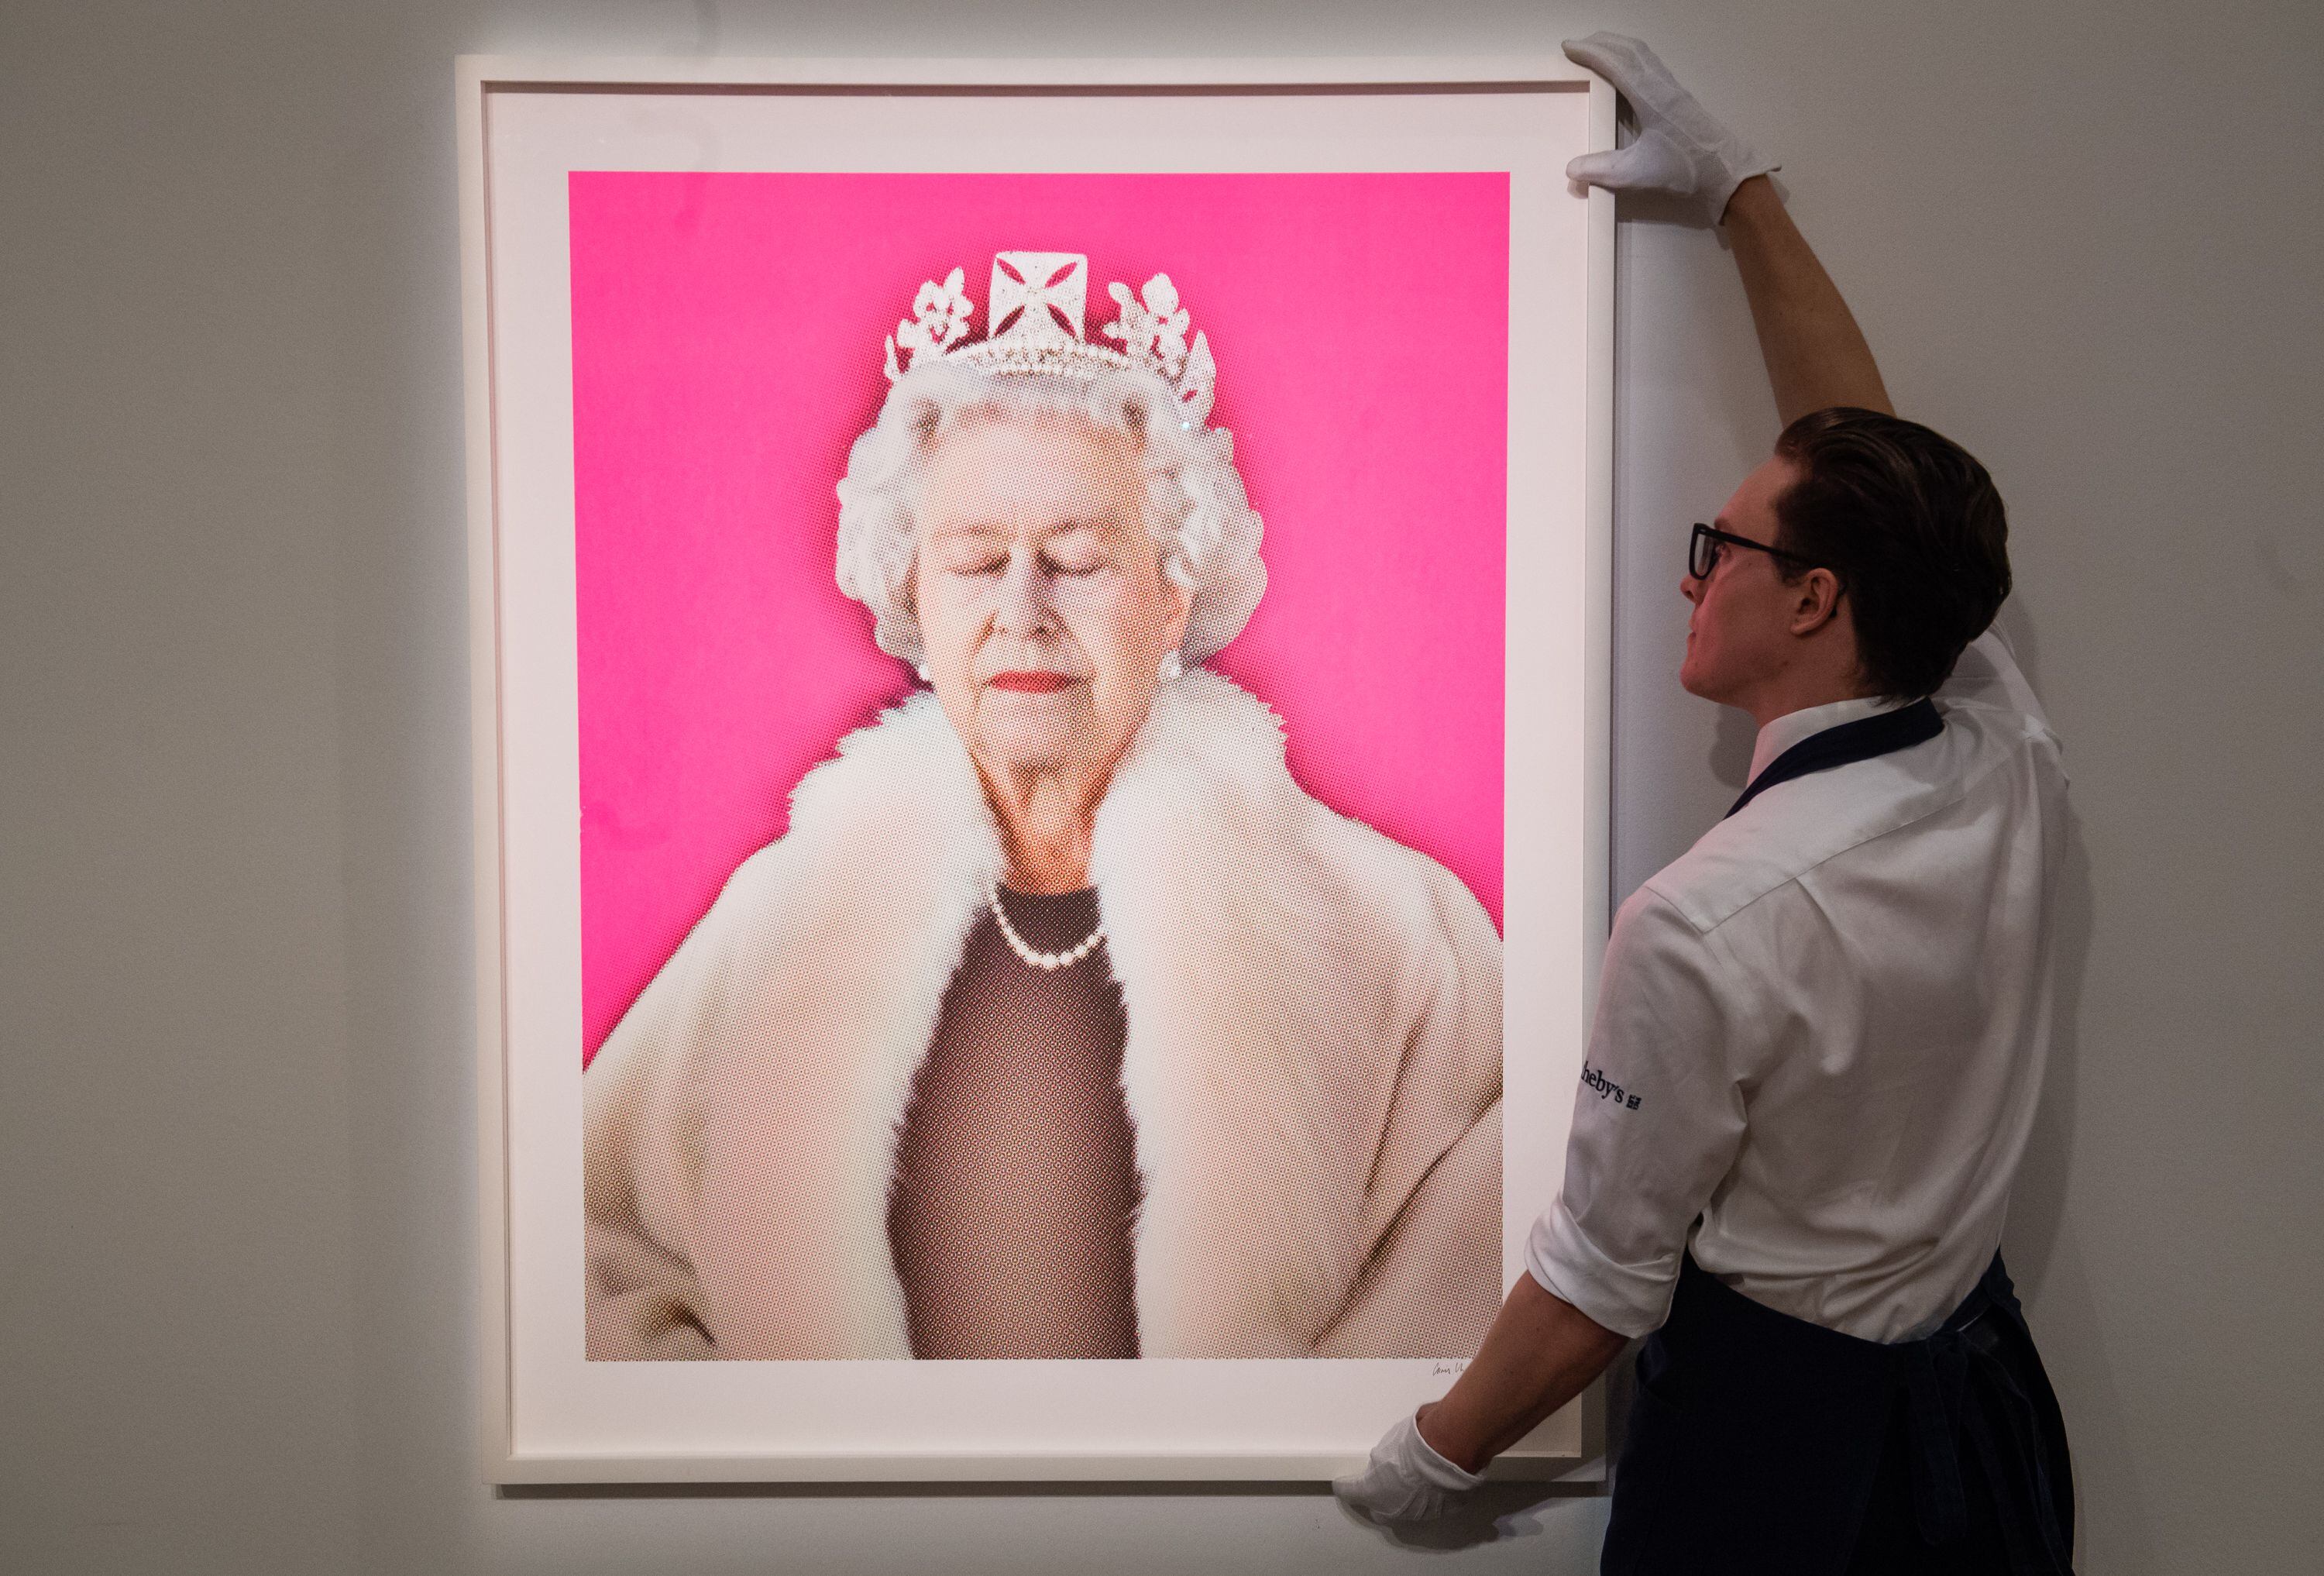 Cuadro de la reina exhibido para la subasta de Sotheby's 'Made in Britain', el 14 de septiembre de 2018 en Londres.